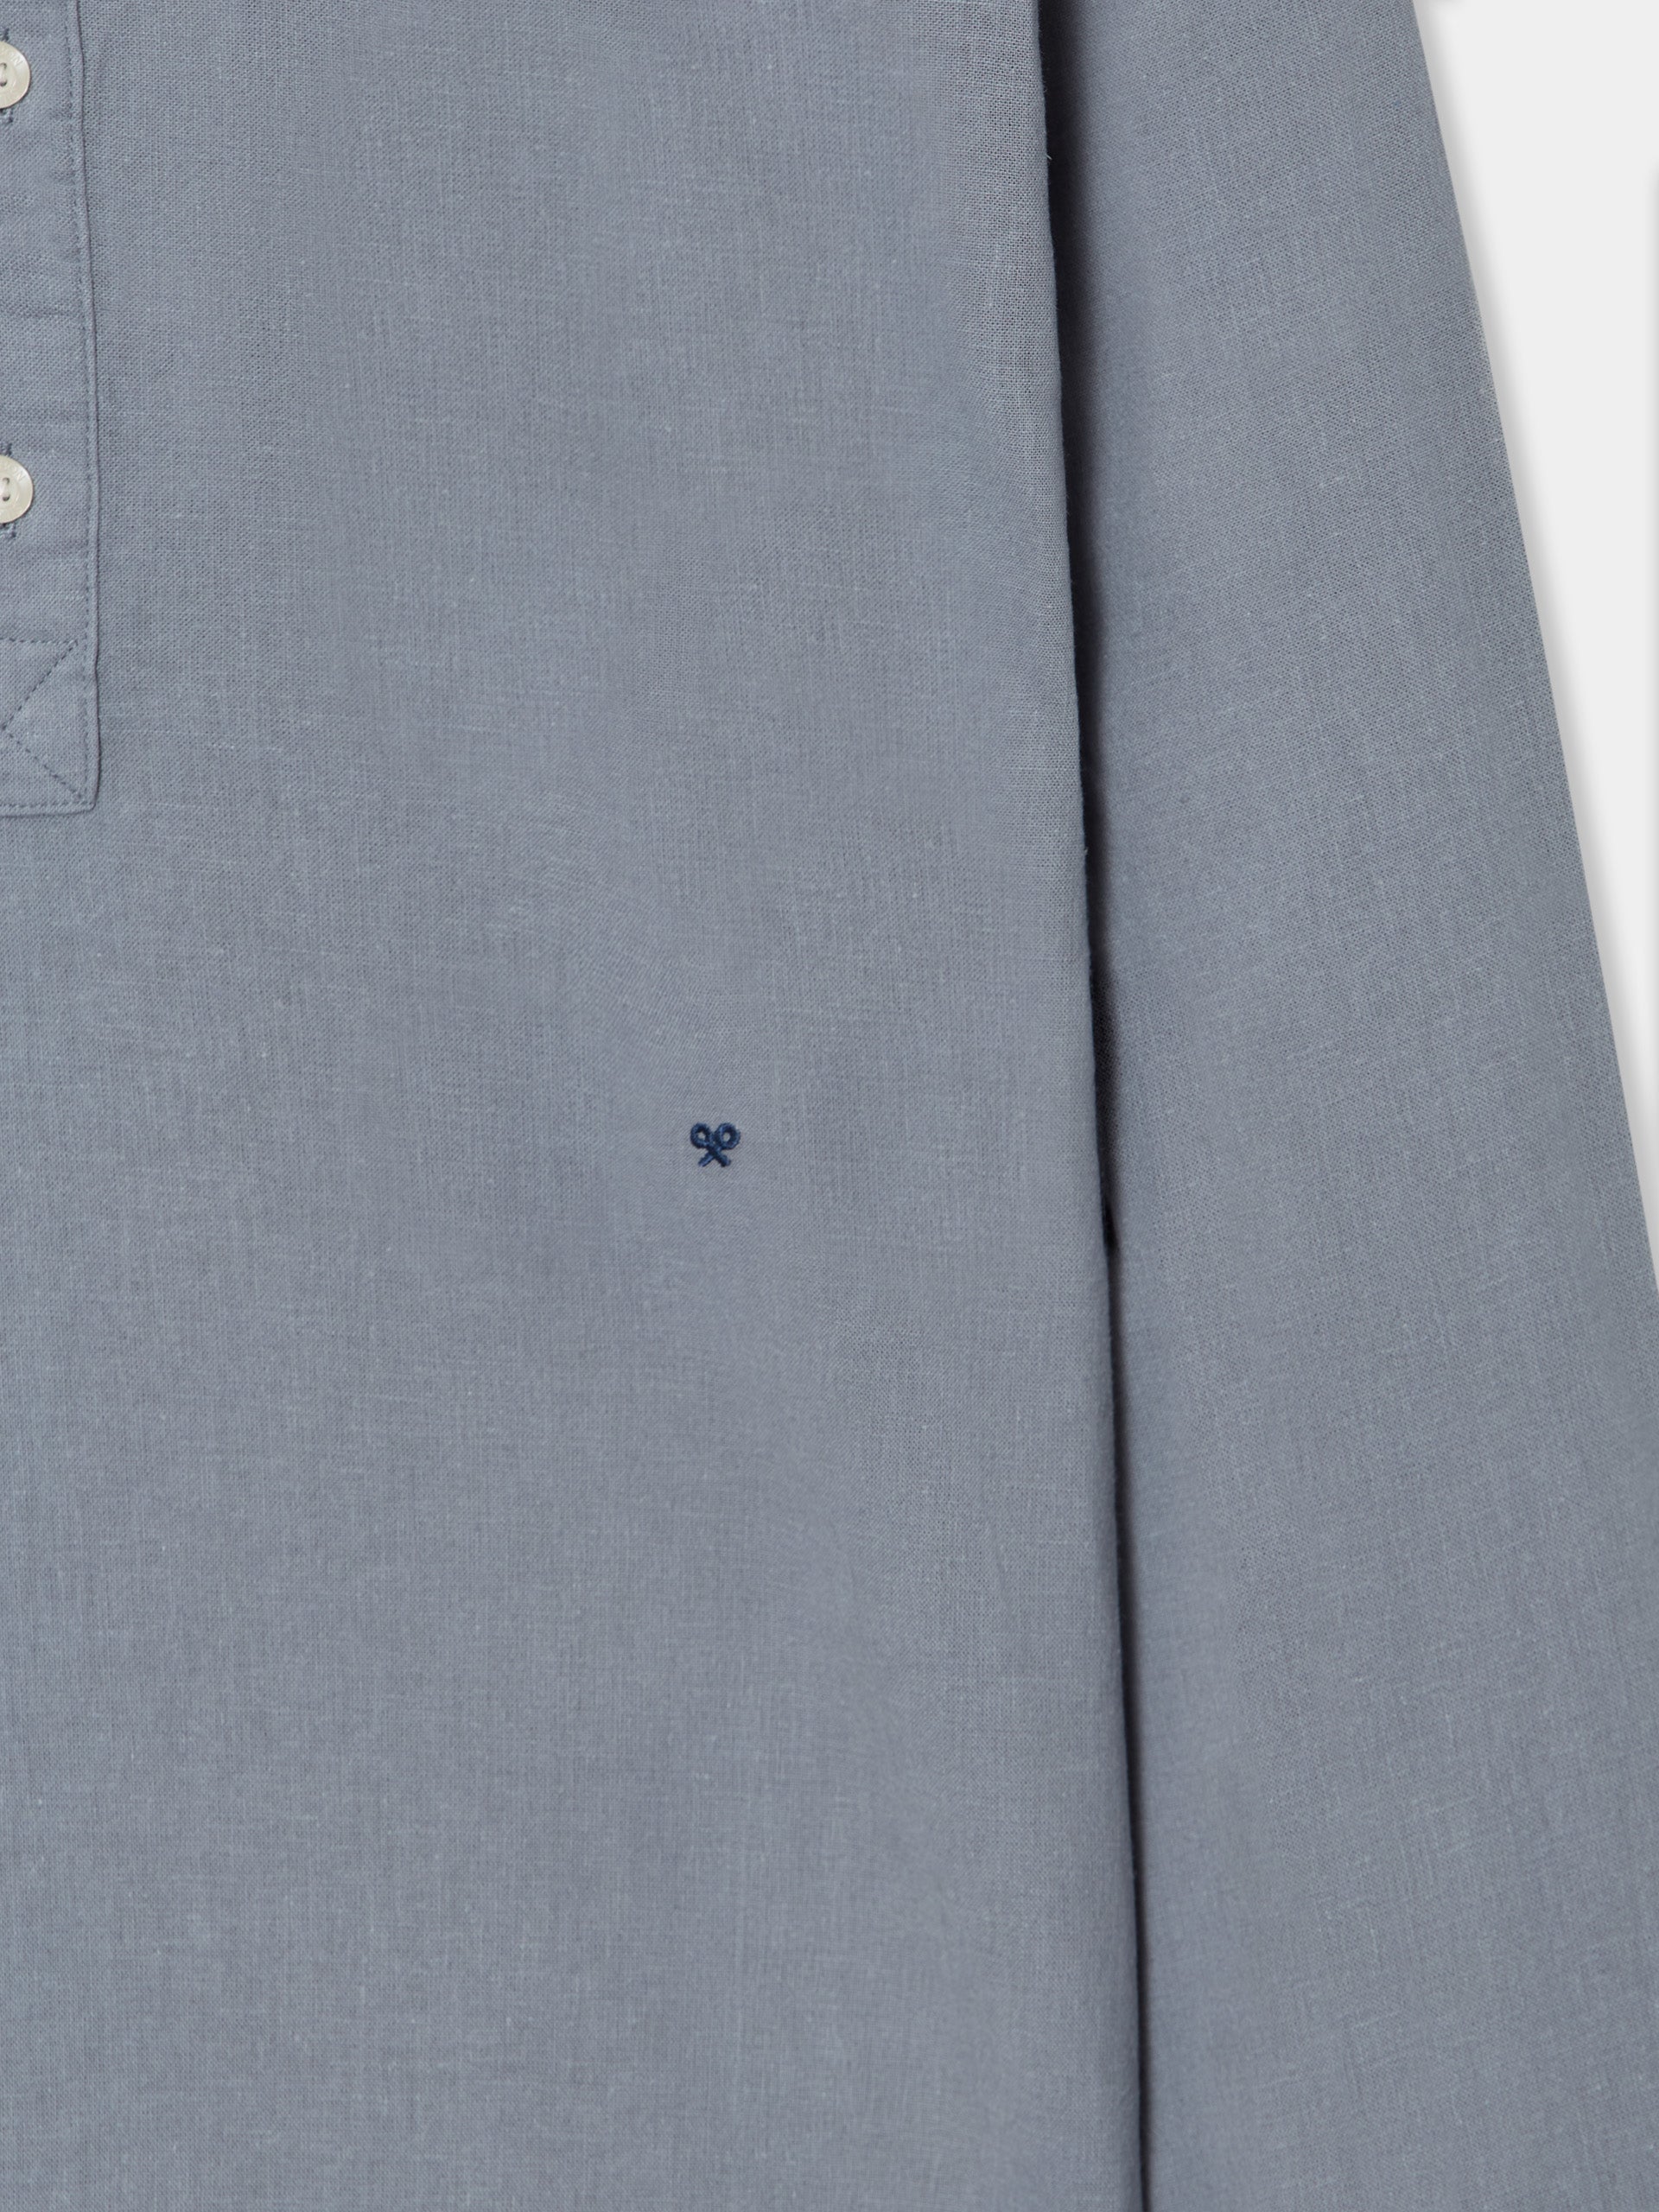 Silbon soft blue gray sport shirt